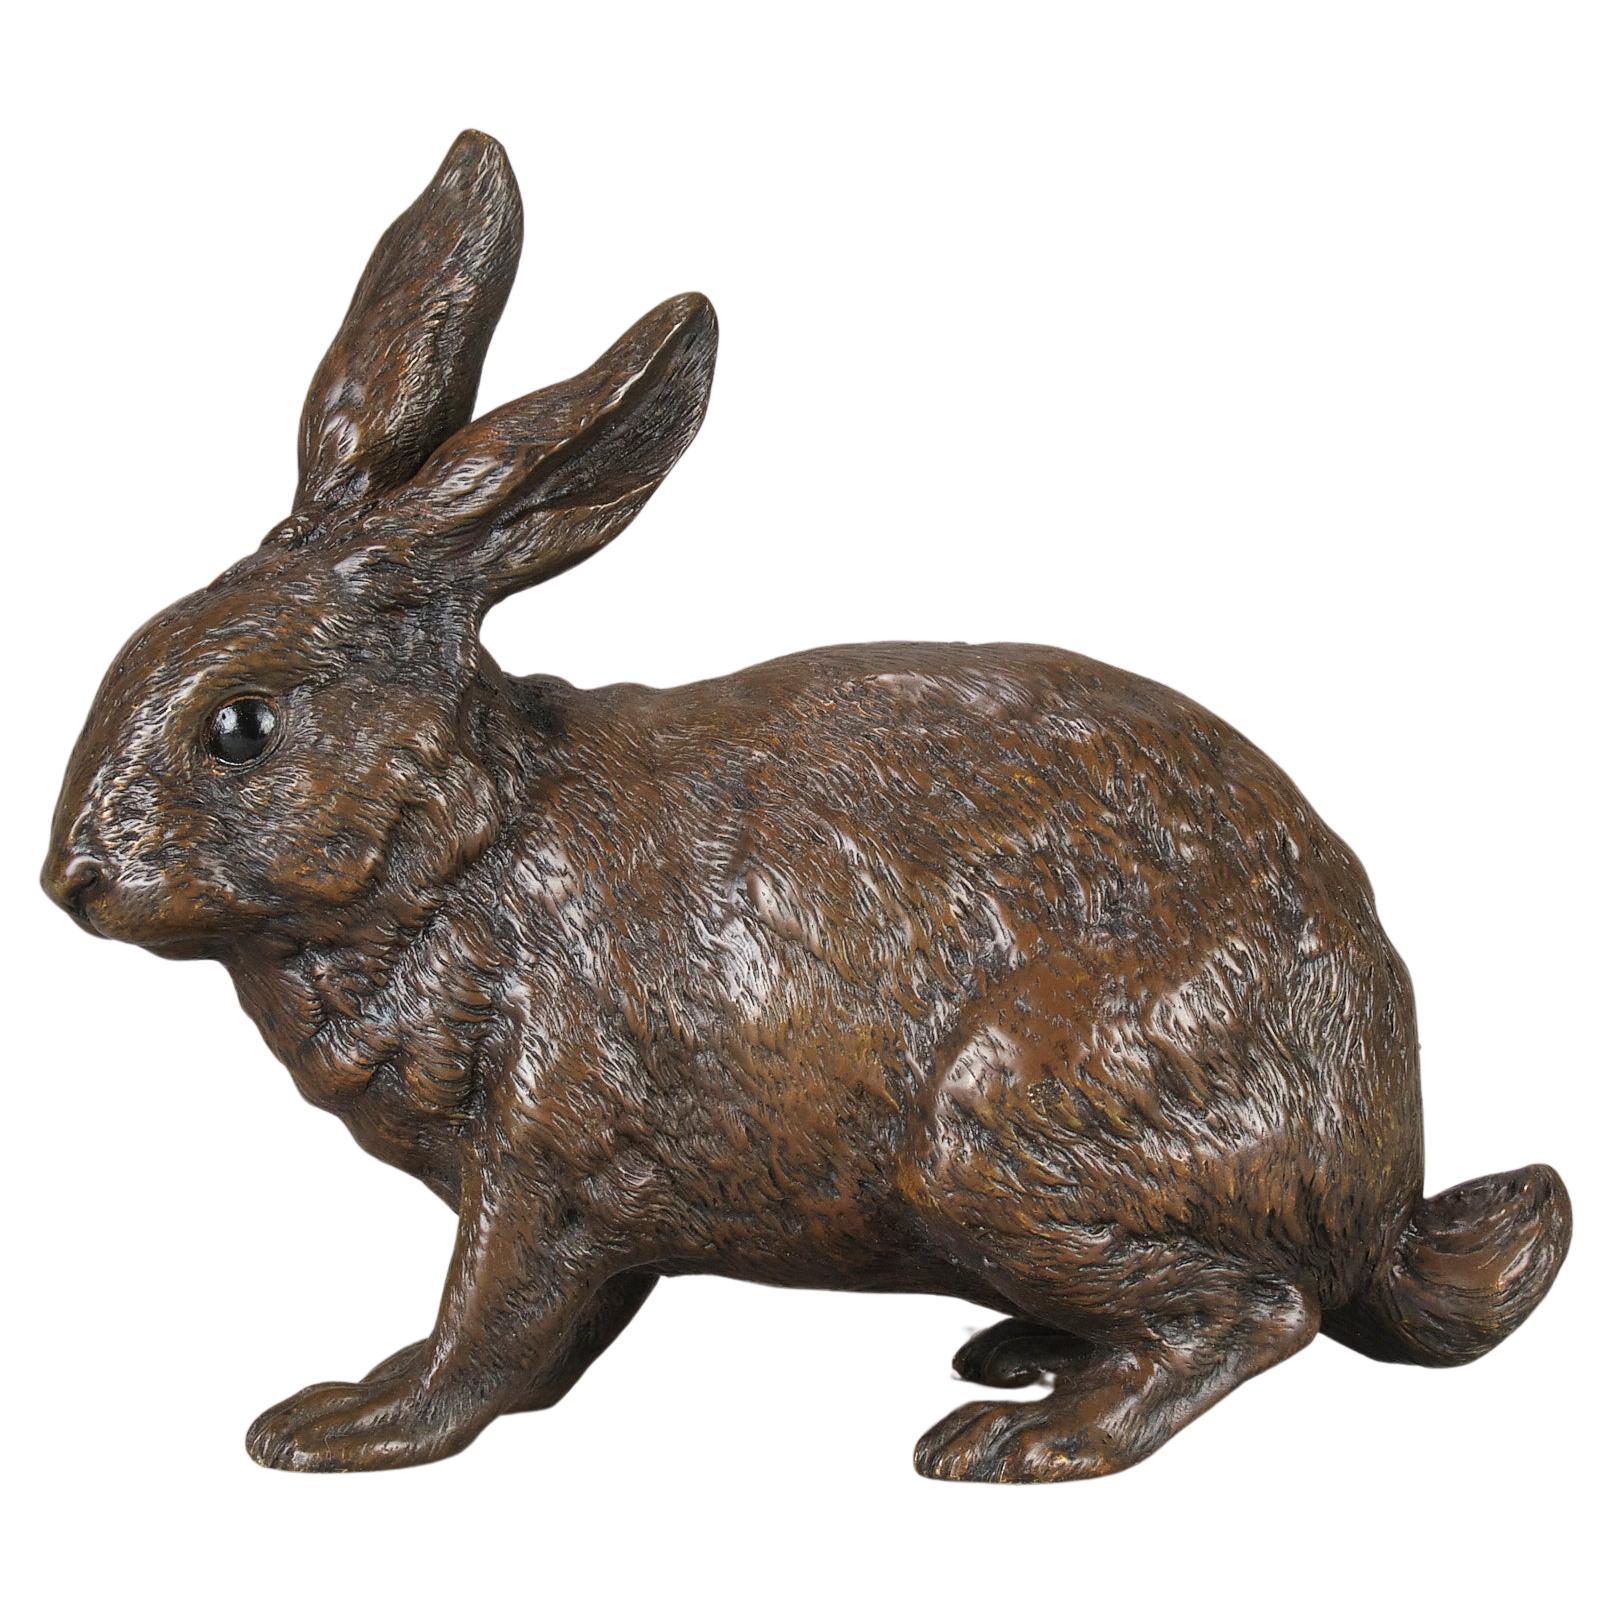 Cold-bemalte Bronze „Rabbit“ von Franz Bergman aus dem frühen 20. Jahrhundert